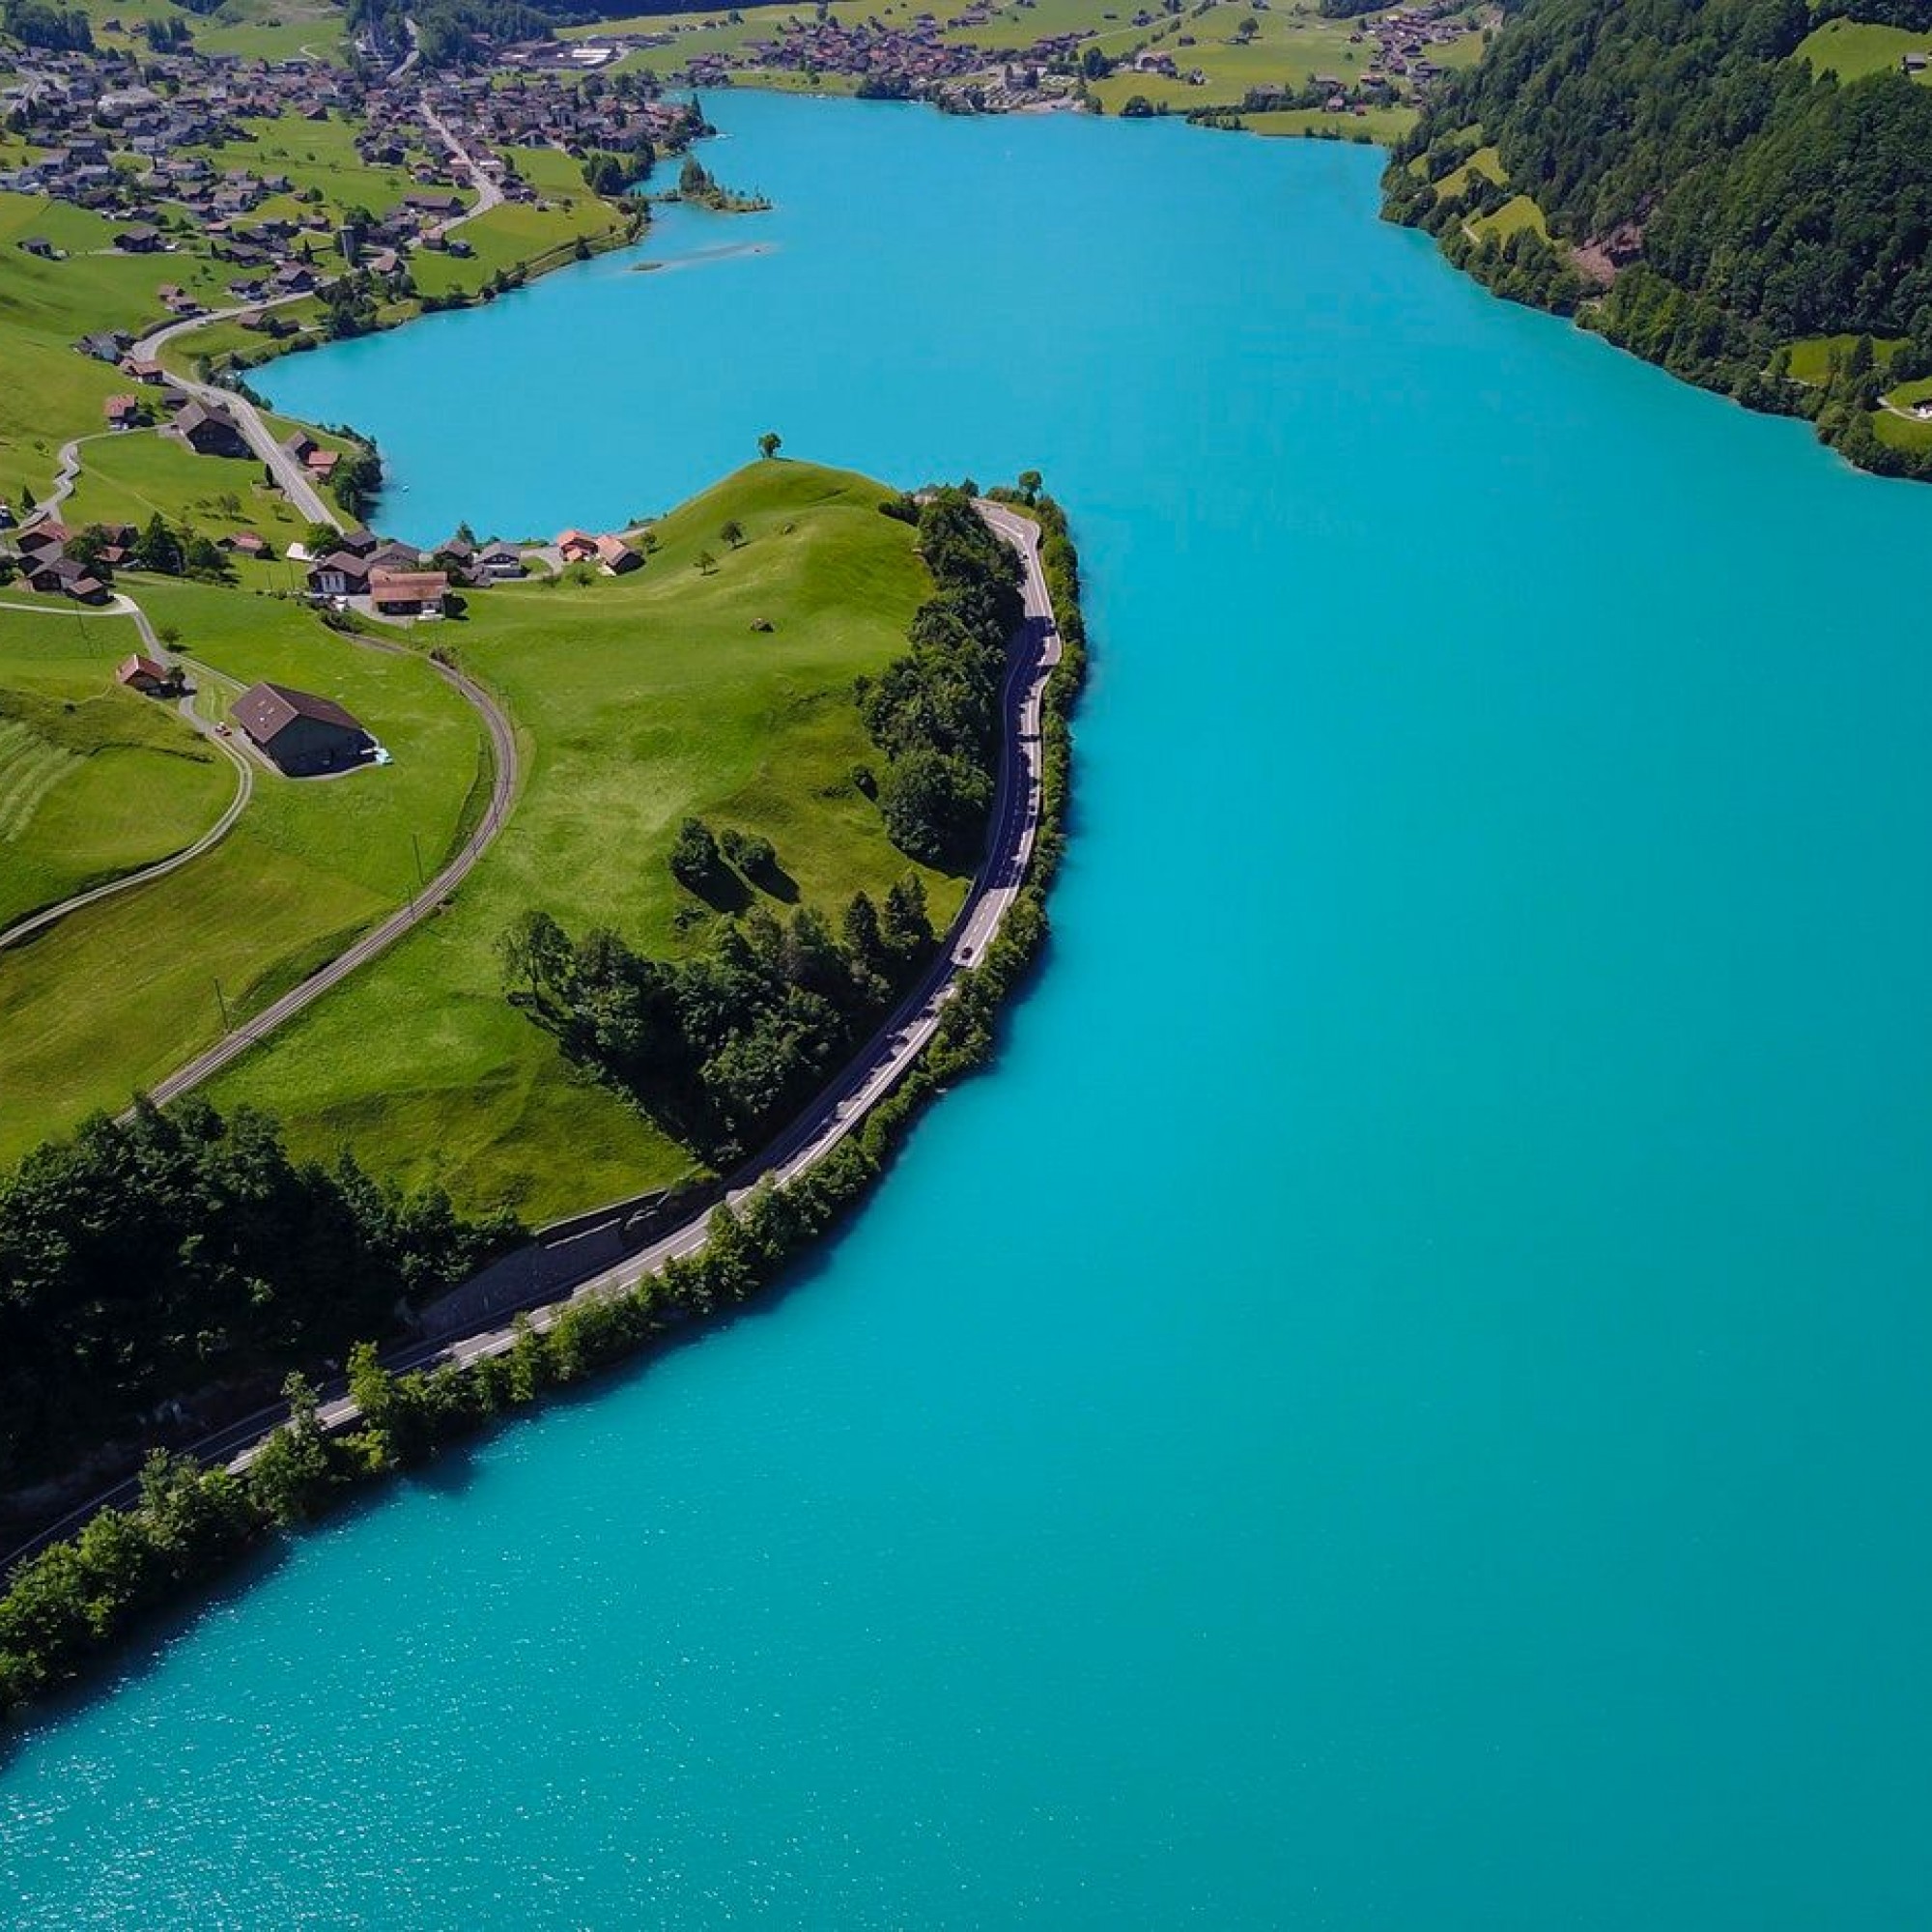 Atemberaubend blauer See mit grünen Matten und kleinem Dorf